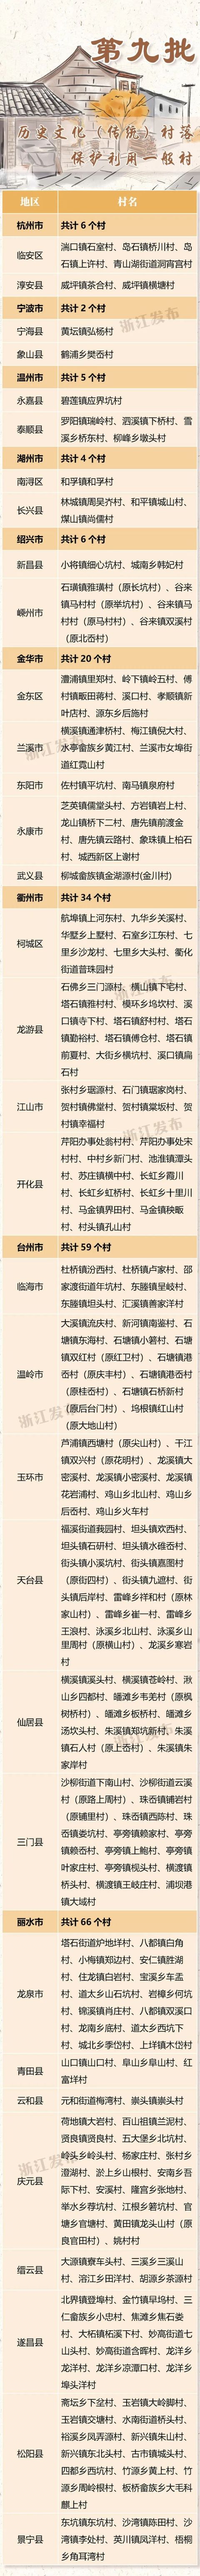 浙江公布第九批历史文化村落保护利用重点村和一般村名单